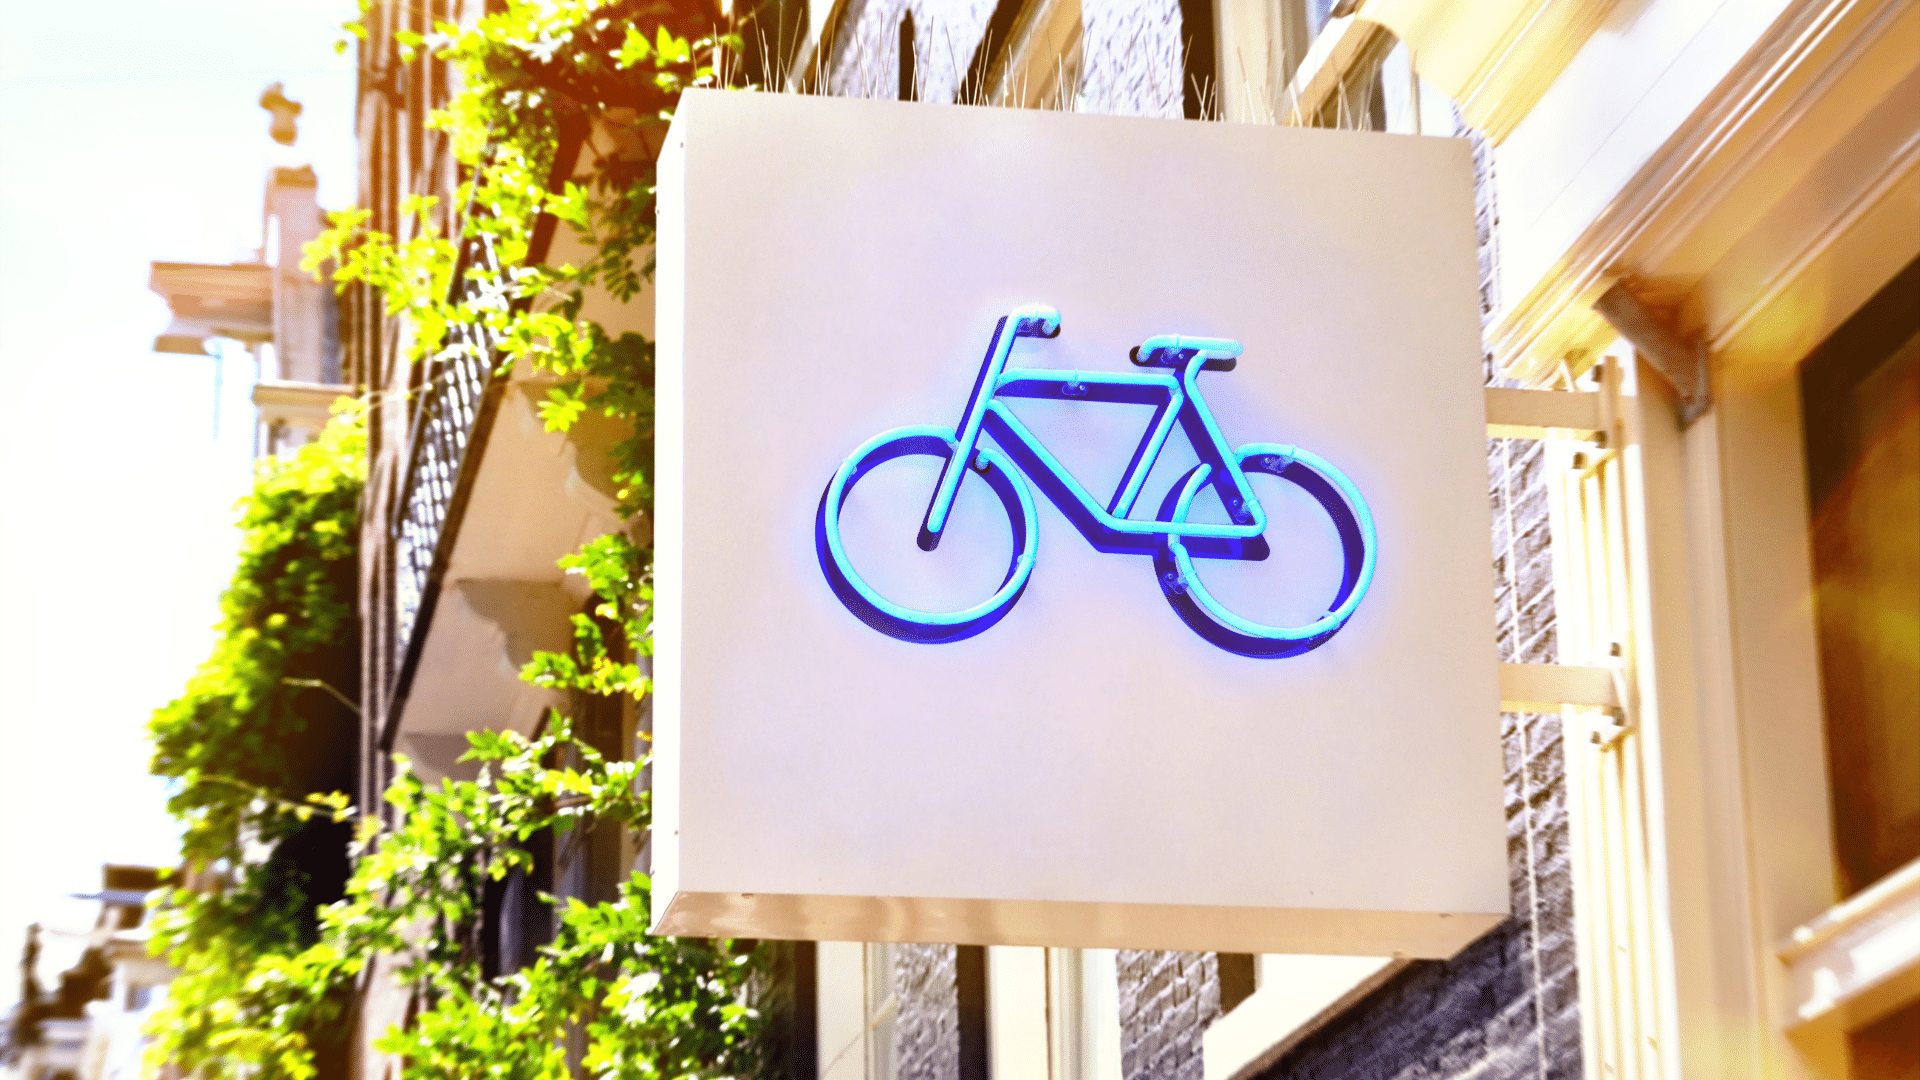 10 erstklassige Marketing-Strategien, die jeder Fahrradhändler braucht!